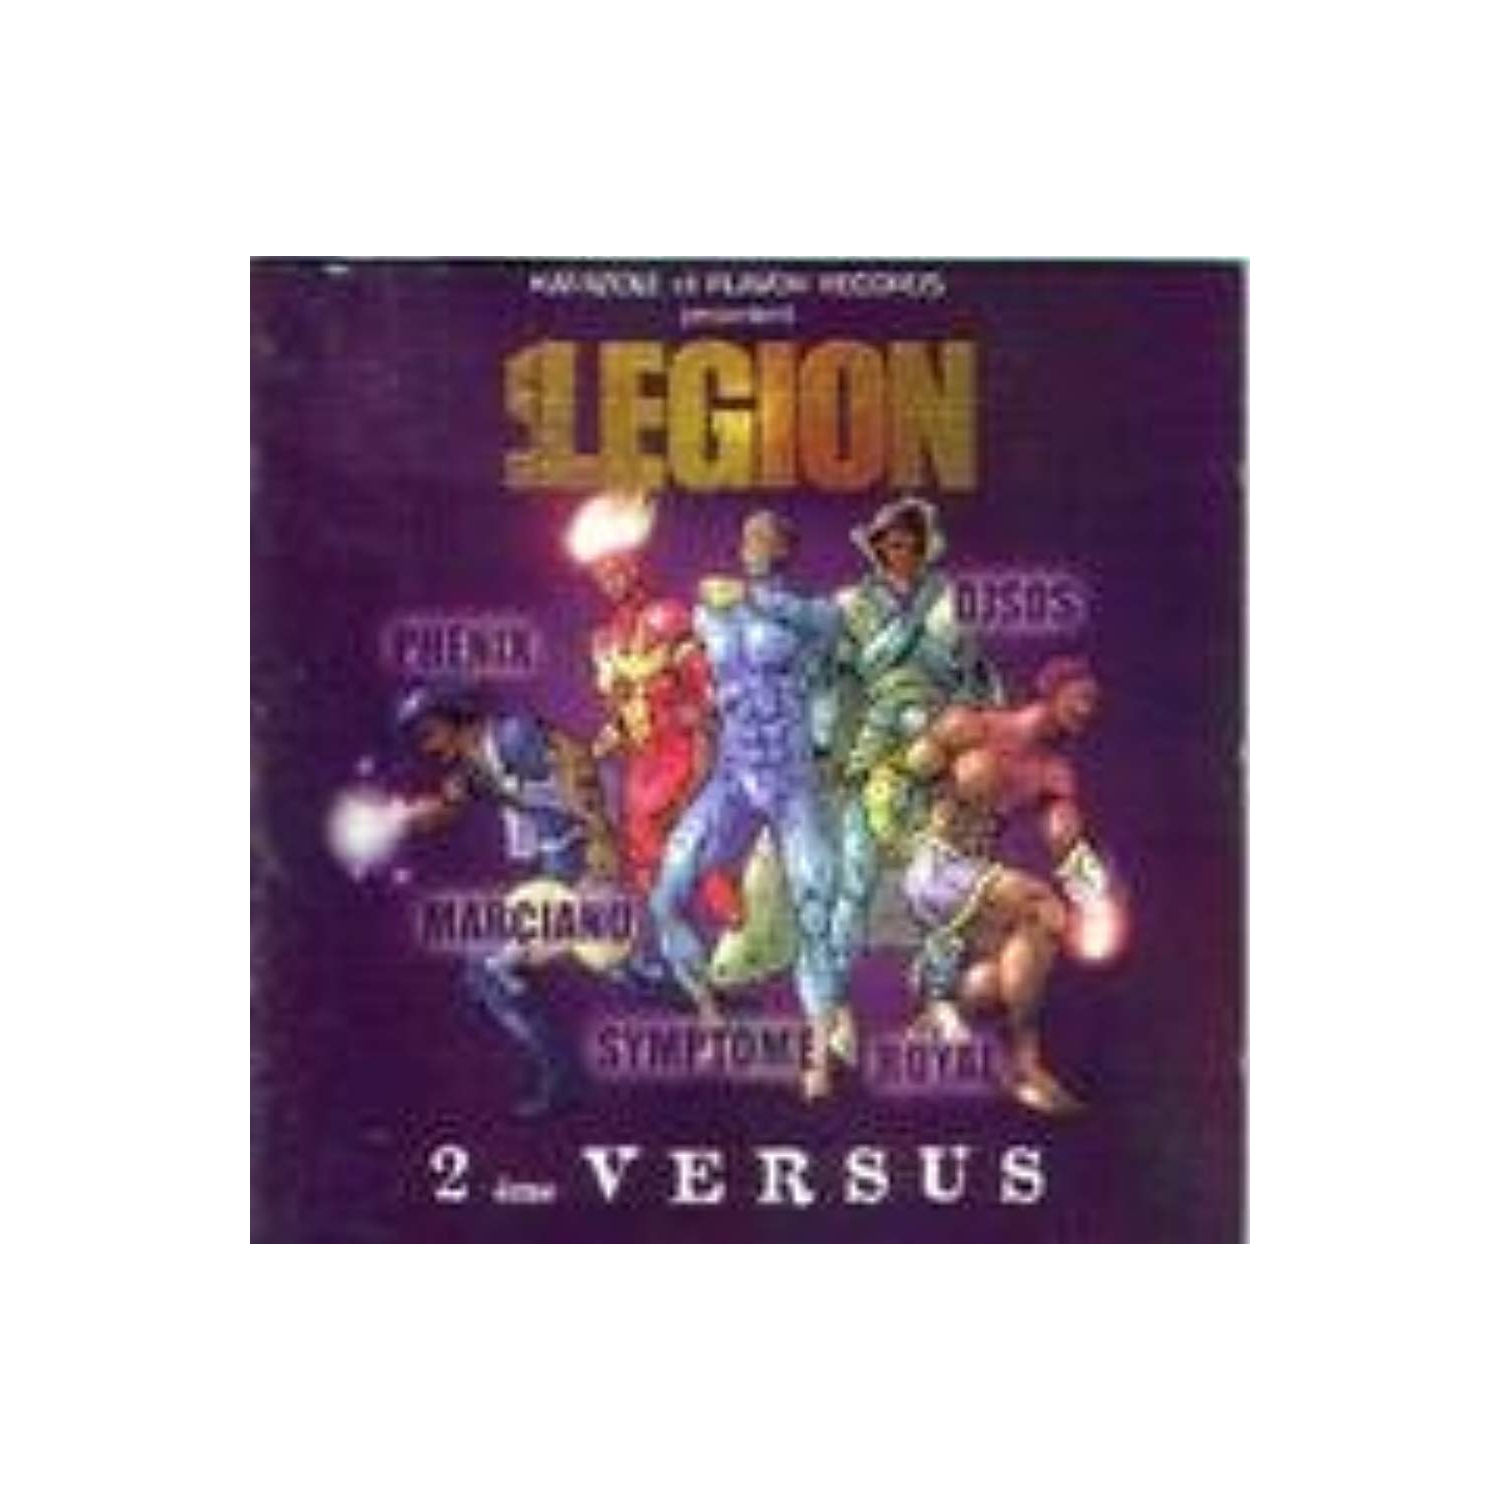 2eme Versus [Audio CD] La Legion